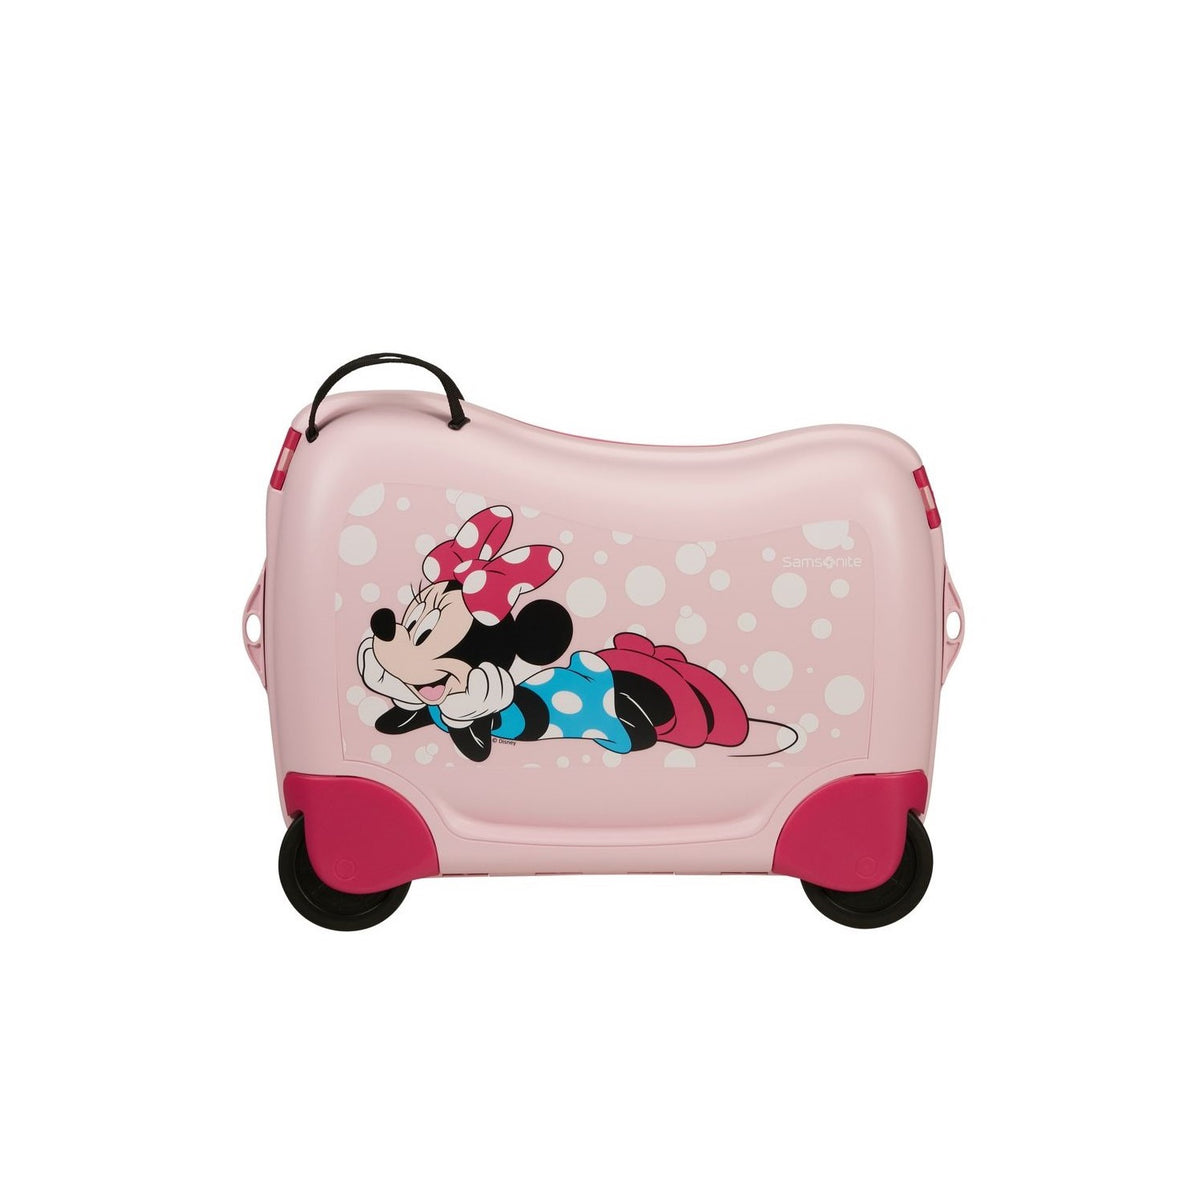 Maleta Infantil Minnie Glitter Dream2Go Disney de Samsonite